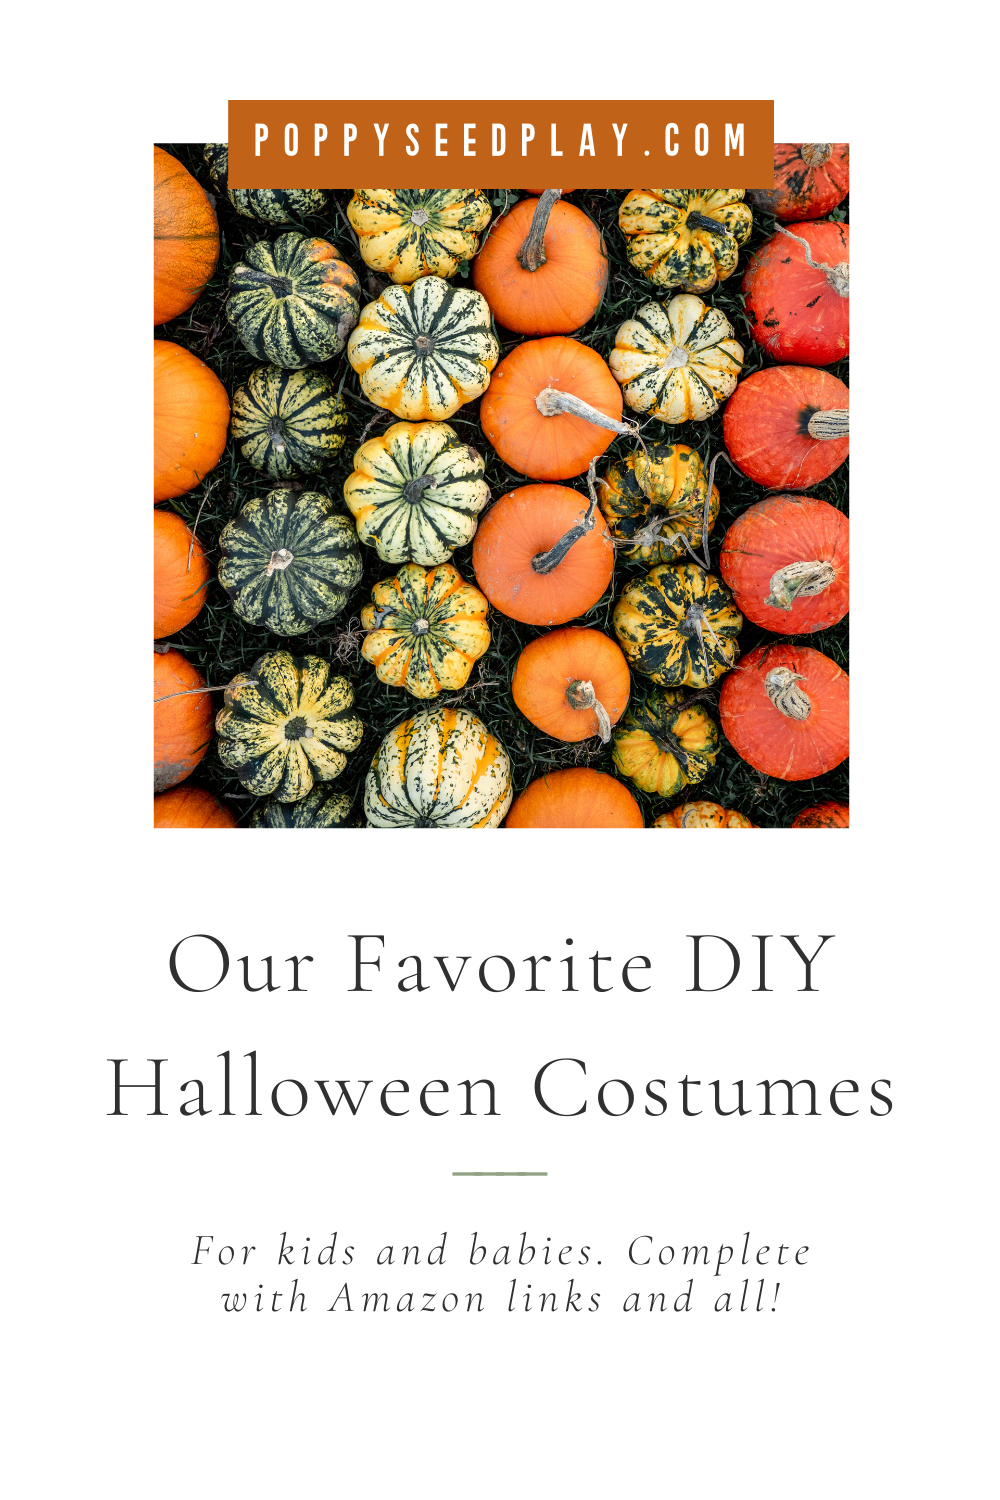 DIY Halloween Costumes for Babies & Kids